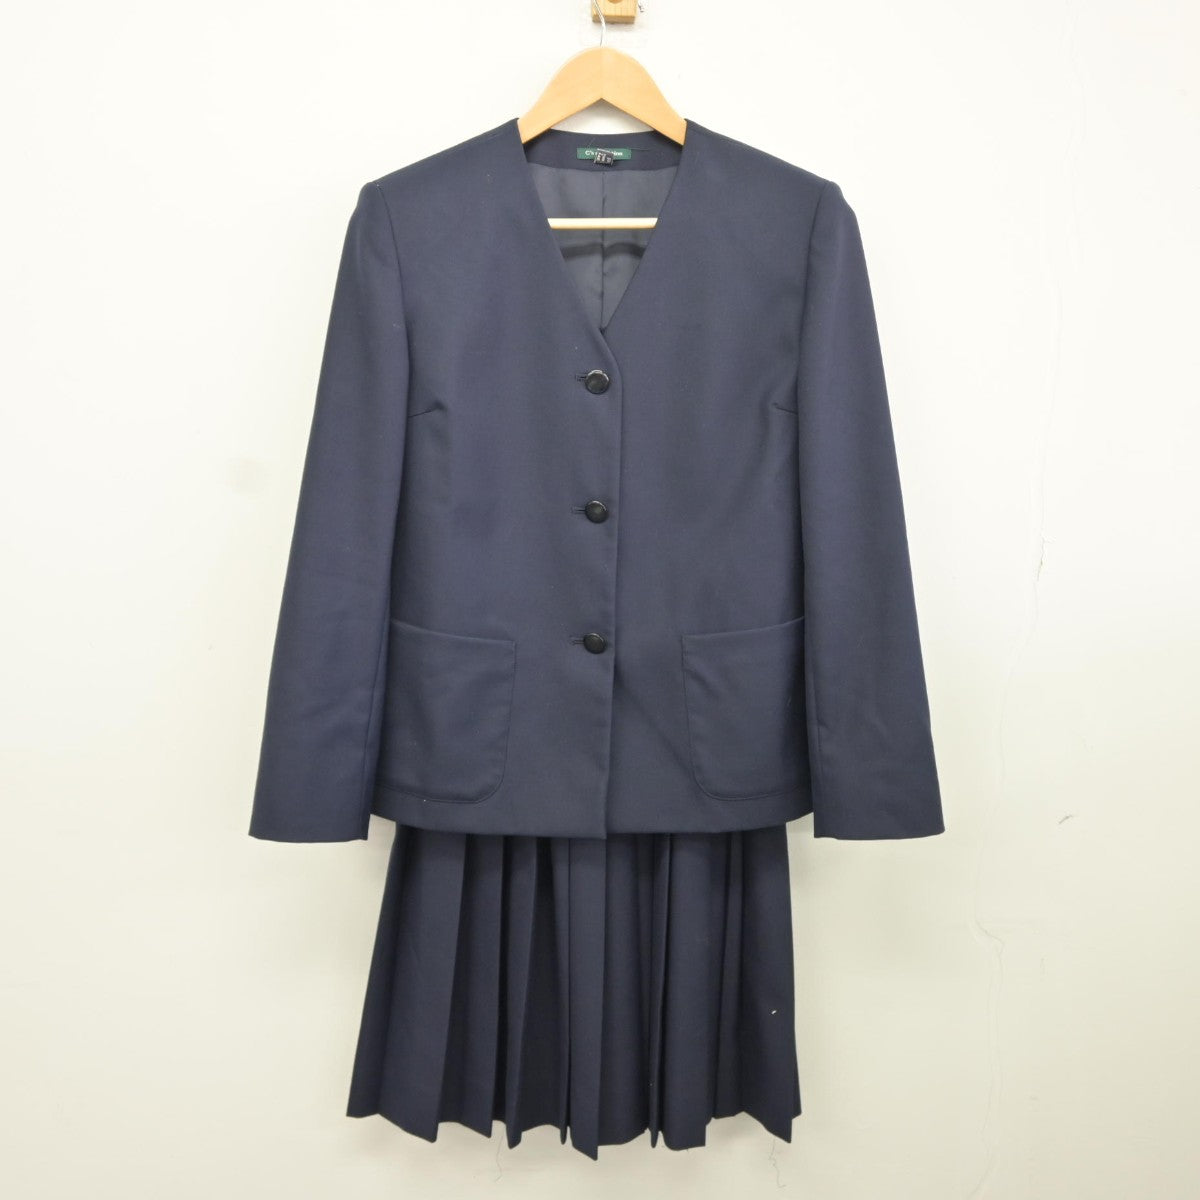 宮崎第一中学校 男子制服一式(ブレザーは売れました) - 服/ファッション